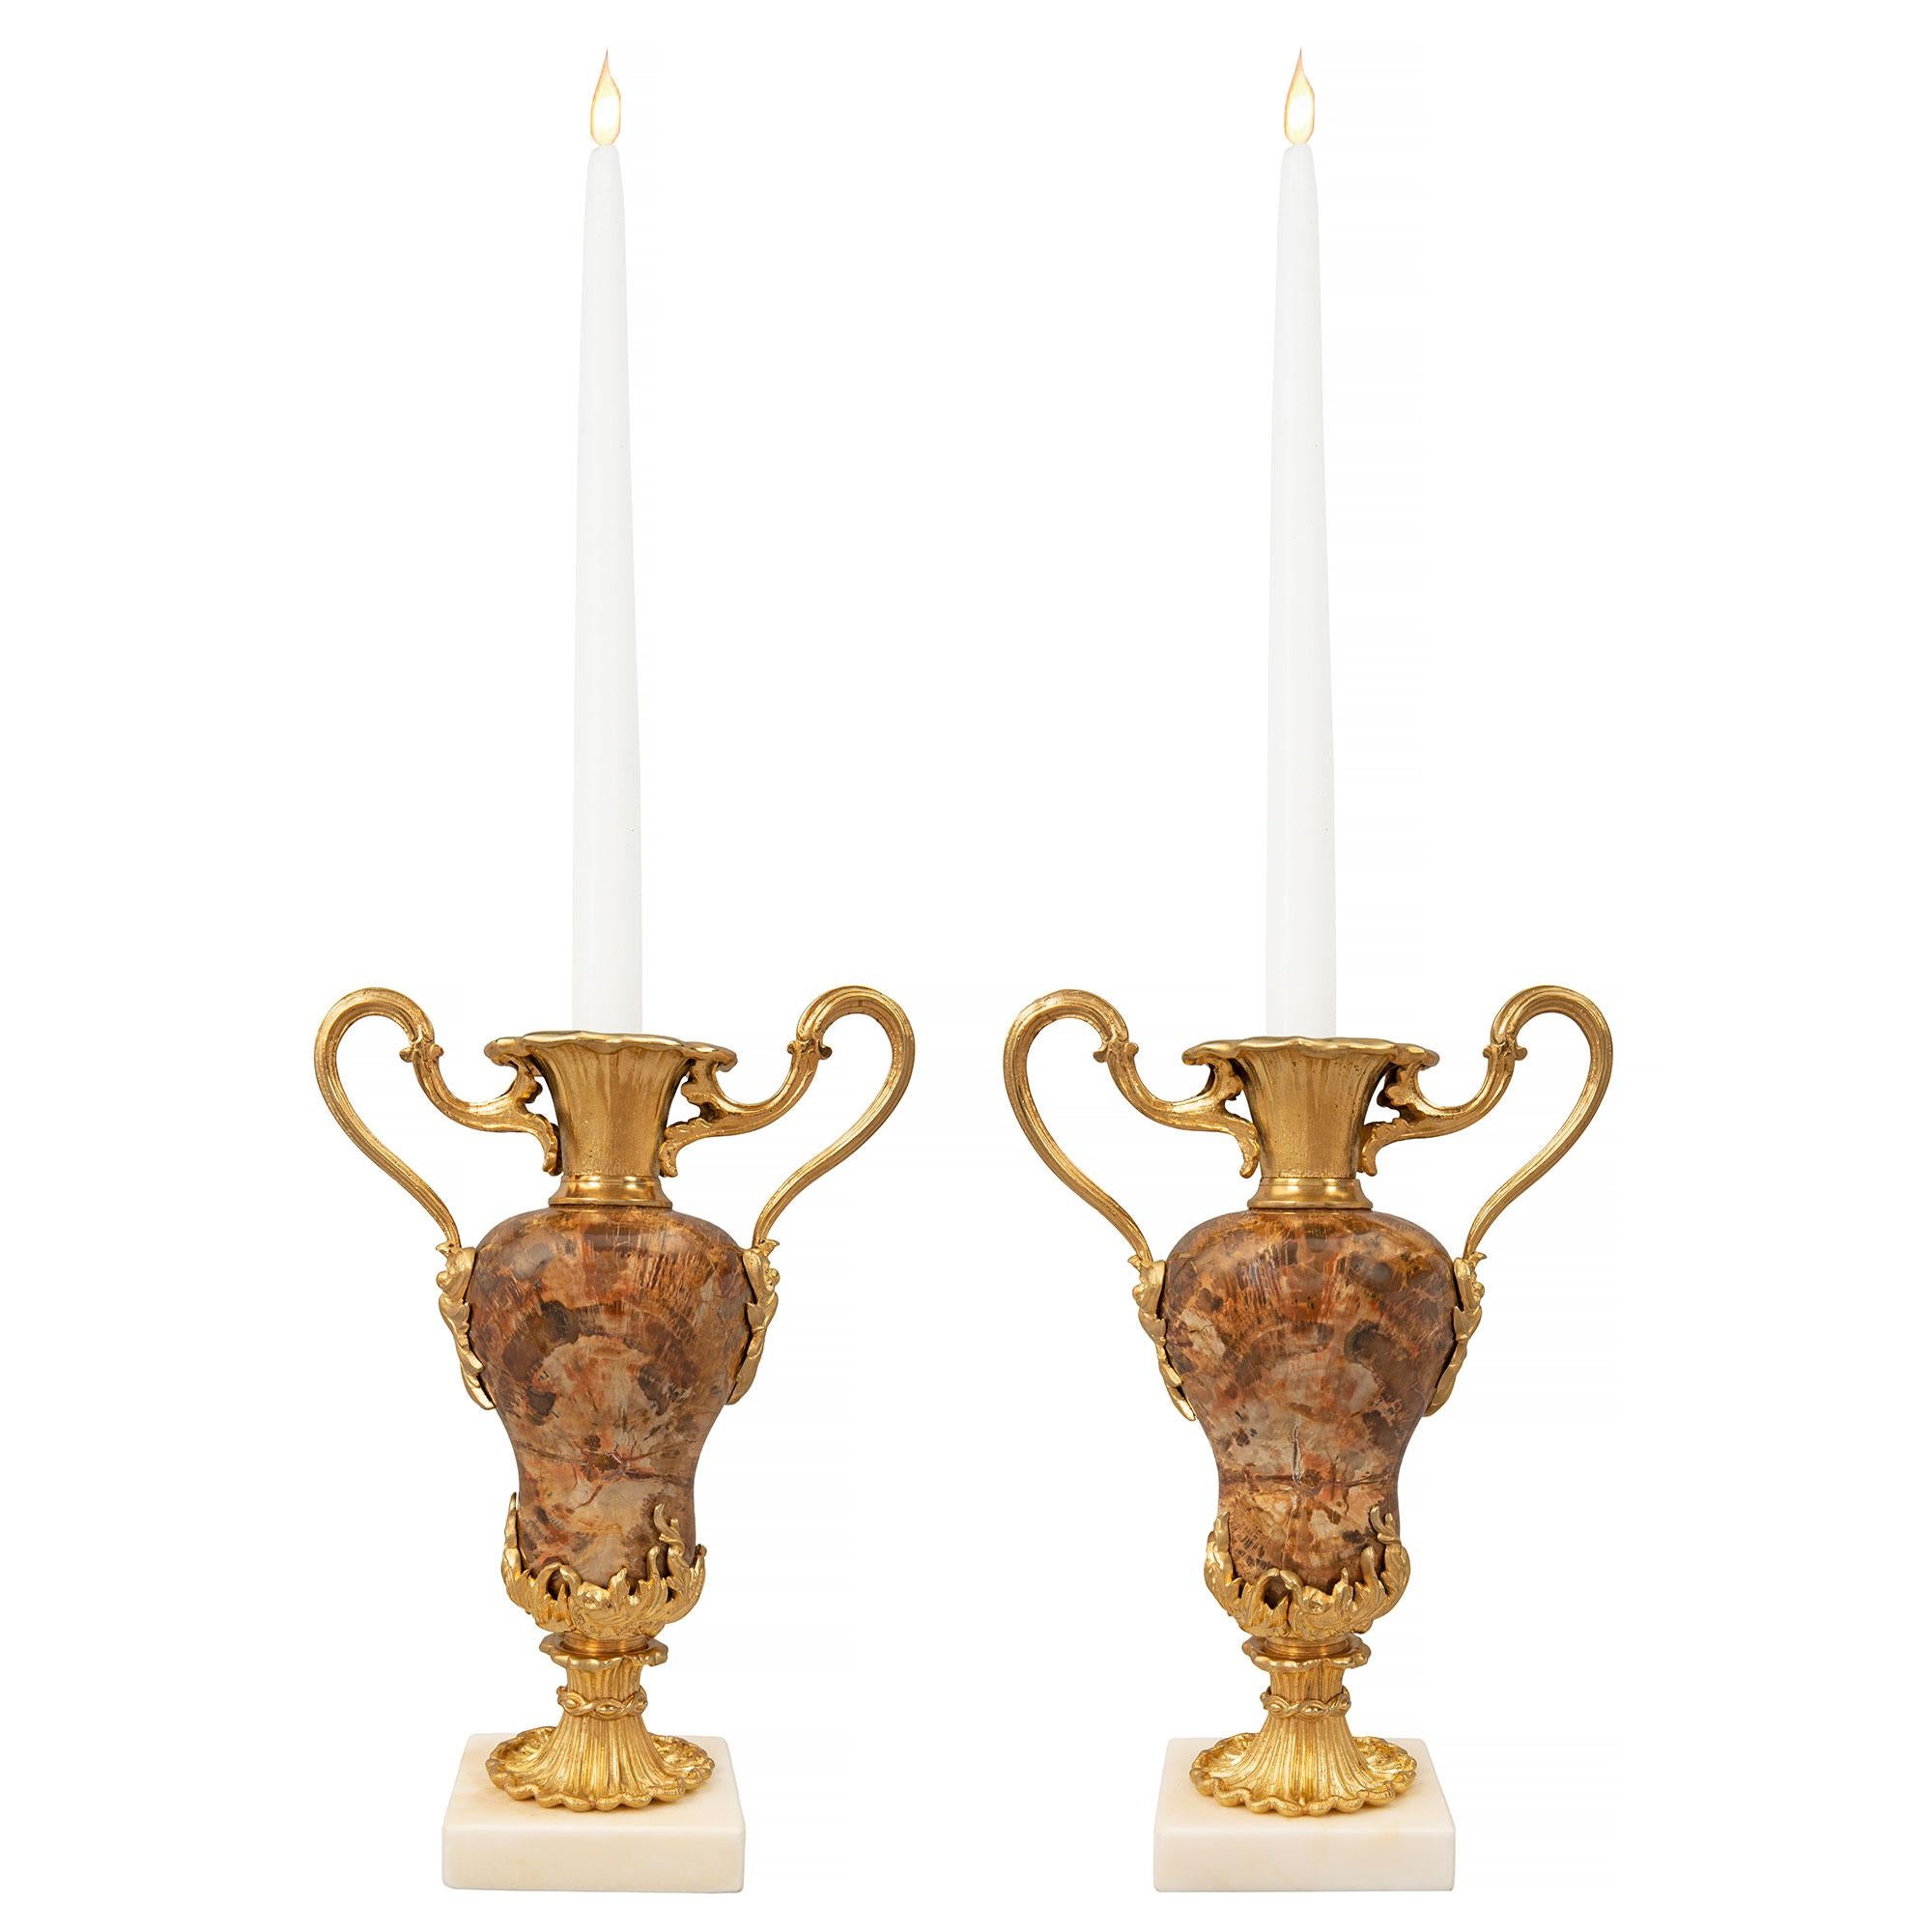 Exceptionnelle et rare paire de vases chandeliers continentaux de style Louis XVI du XIXe siècle en marbre blanc de Carrare, bronze doré et bois pétrifié. Chaque vase est surélevé par une base carrée en marbre blanc de Carrare et un joli piédestal